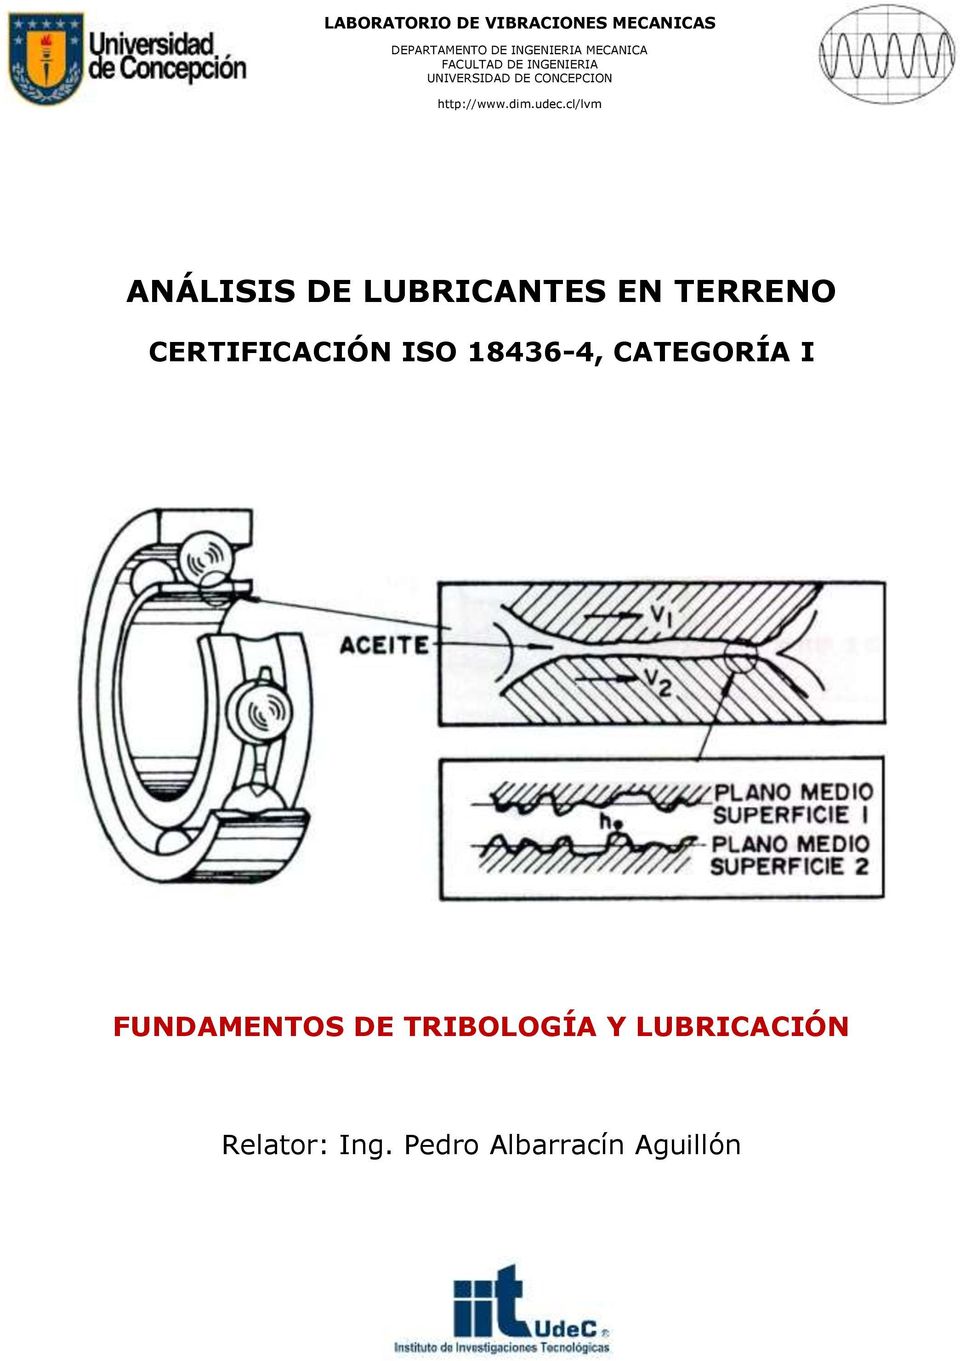 cl/lvm ANÁLISIS DE LUBRICANTES EN TERRENO CERTIFICACIÓN ISO 18436-4,